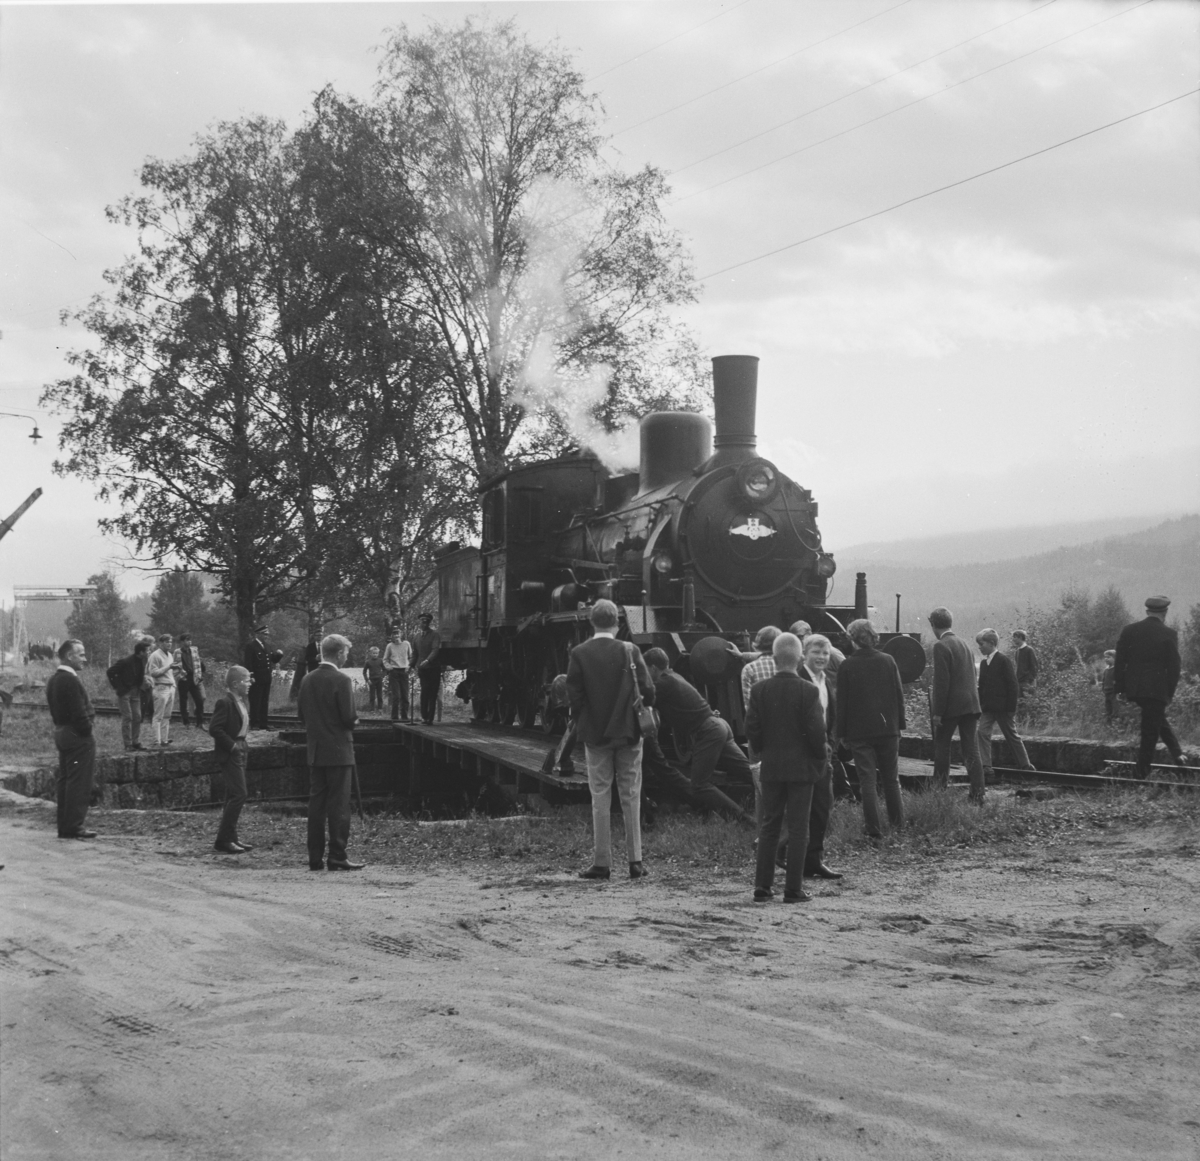 A/L Hølandsbanens veterantog har ankommet Krøderen stasjon. Damplok 18c 245 snus på svingskiven.